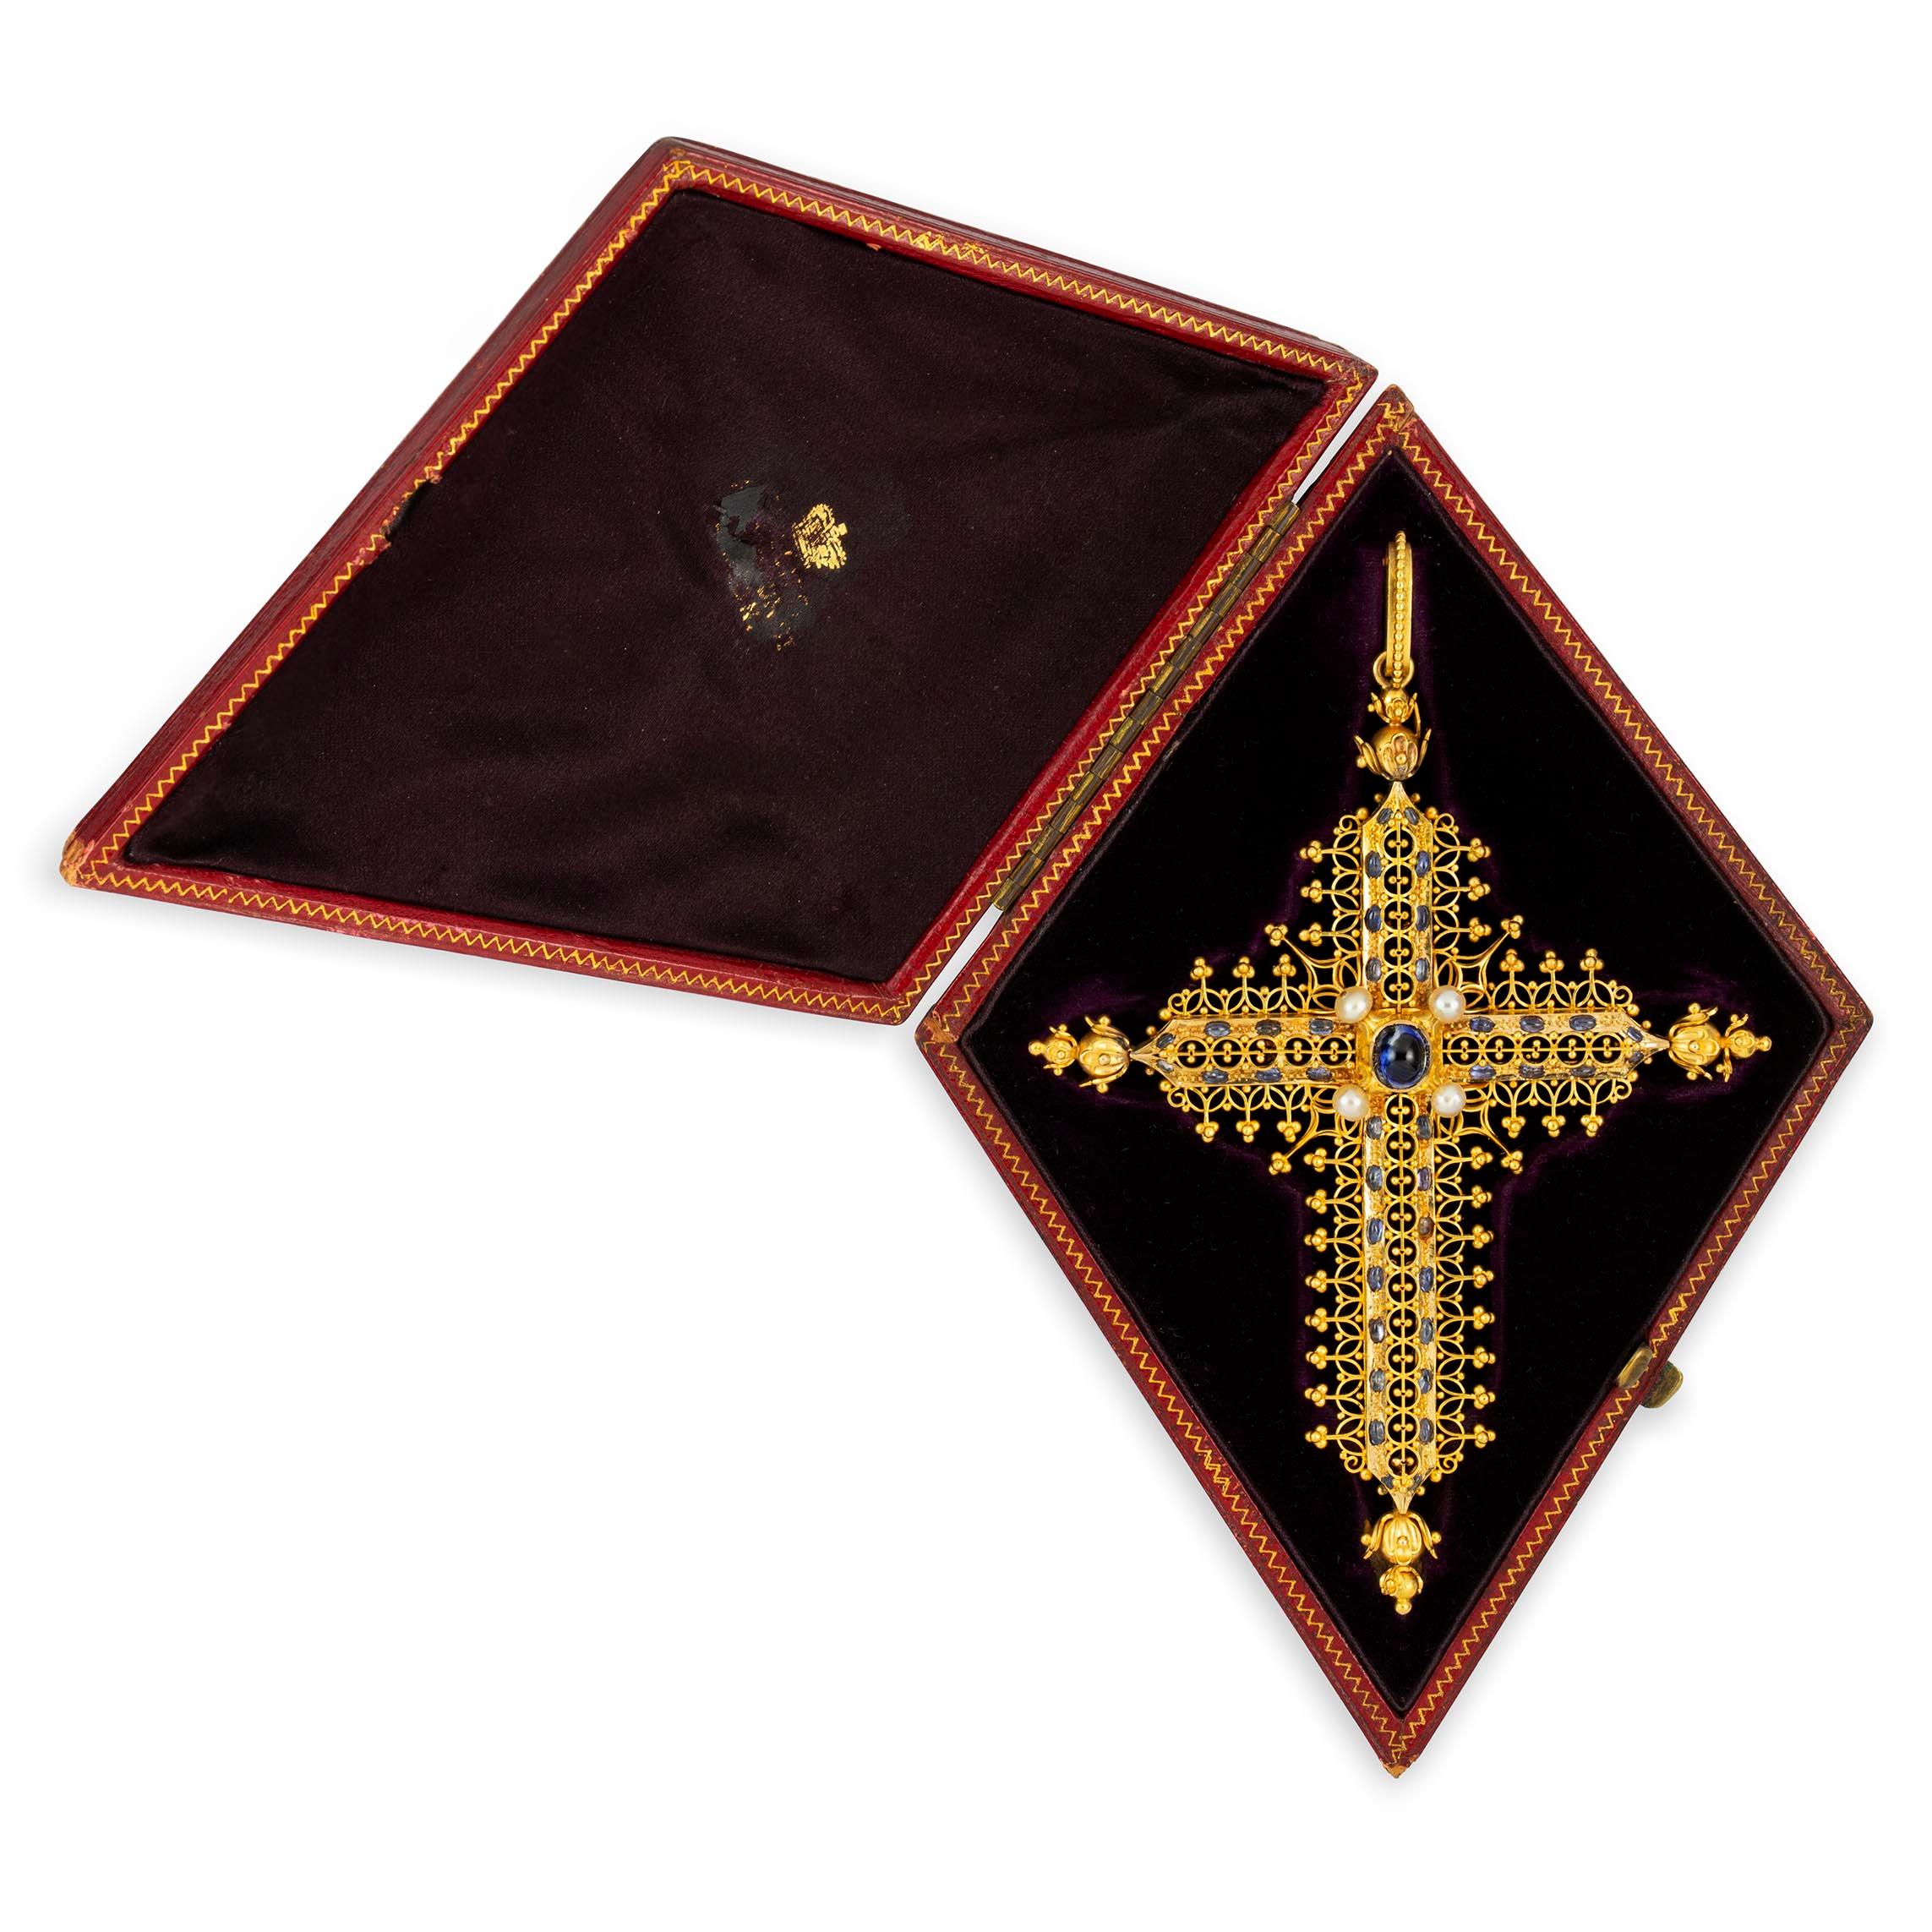 Importante croix en or et saphir de Robert Phillips, la croix en or ornée d'un saphir taillé en cabochon et de quatre perles au centre, avec d'autres saphirs en cabochon sur le bord et des perles d'or et une décoration en fil de fer, vers 1865,